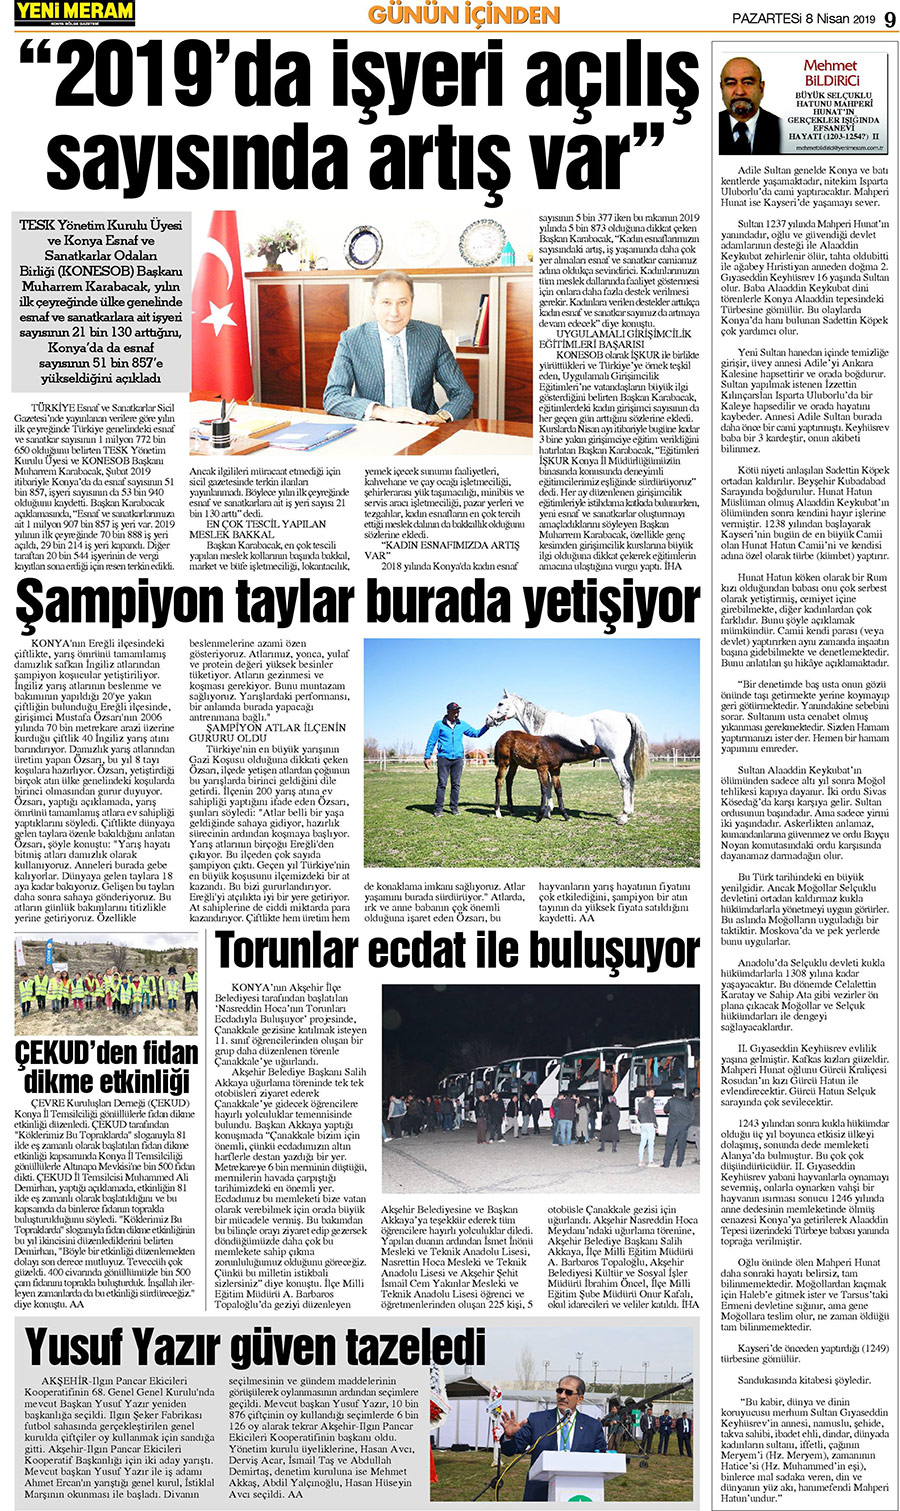 8 Nisan 2019 Yeni Meram Gazetesi